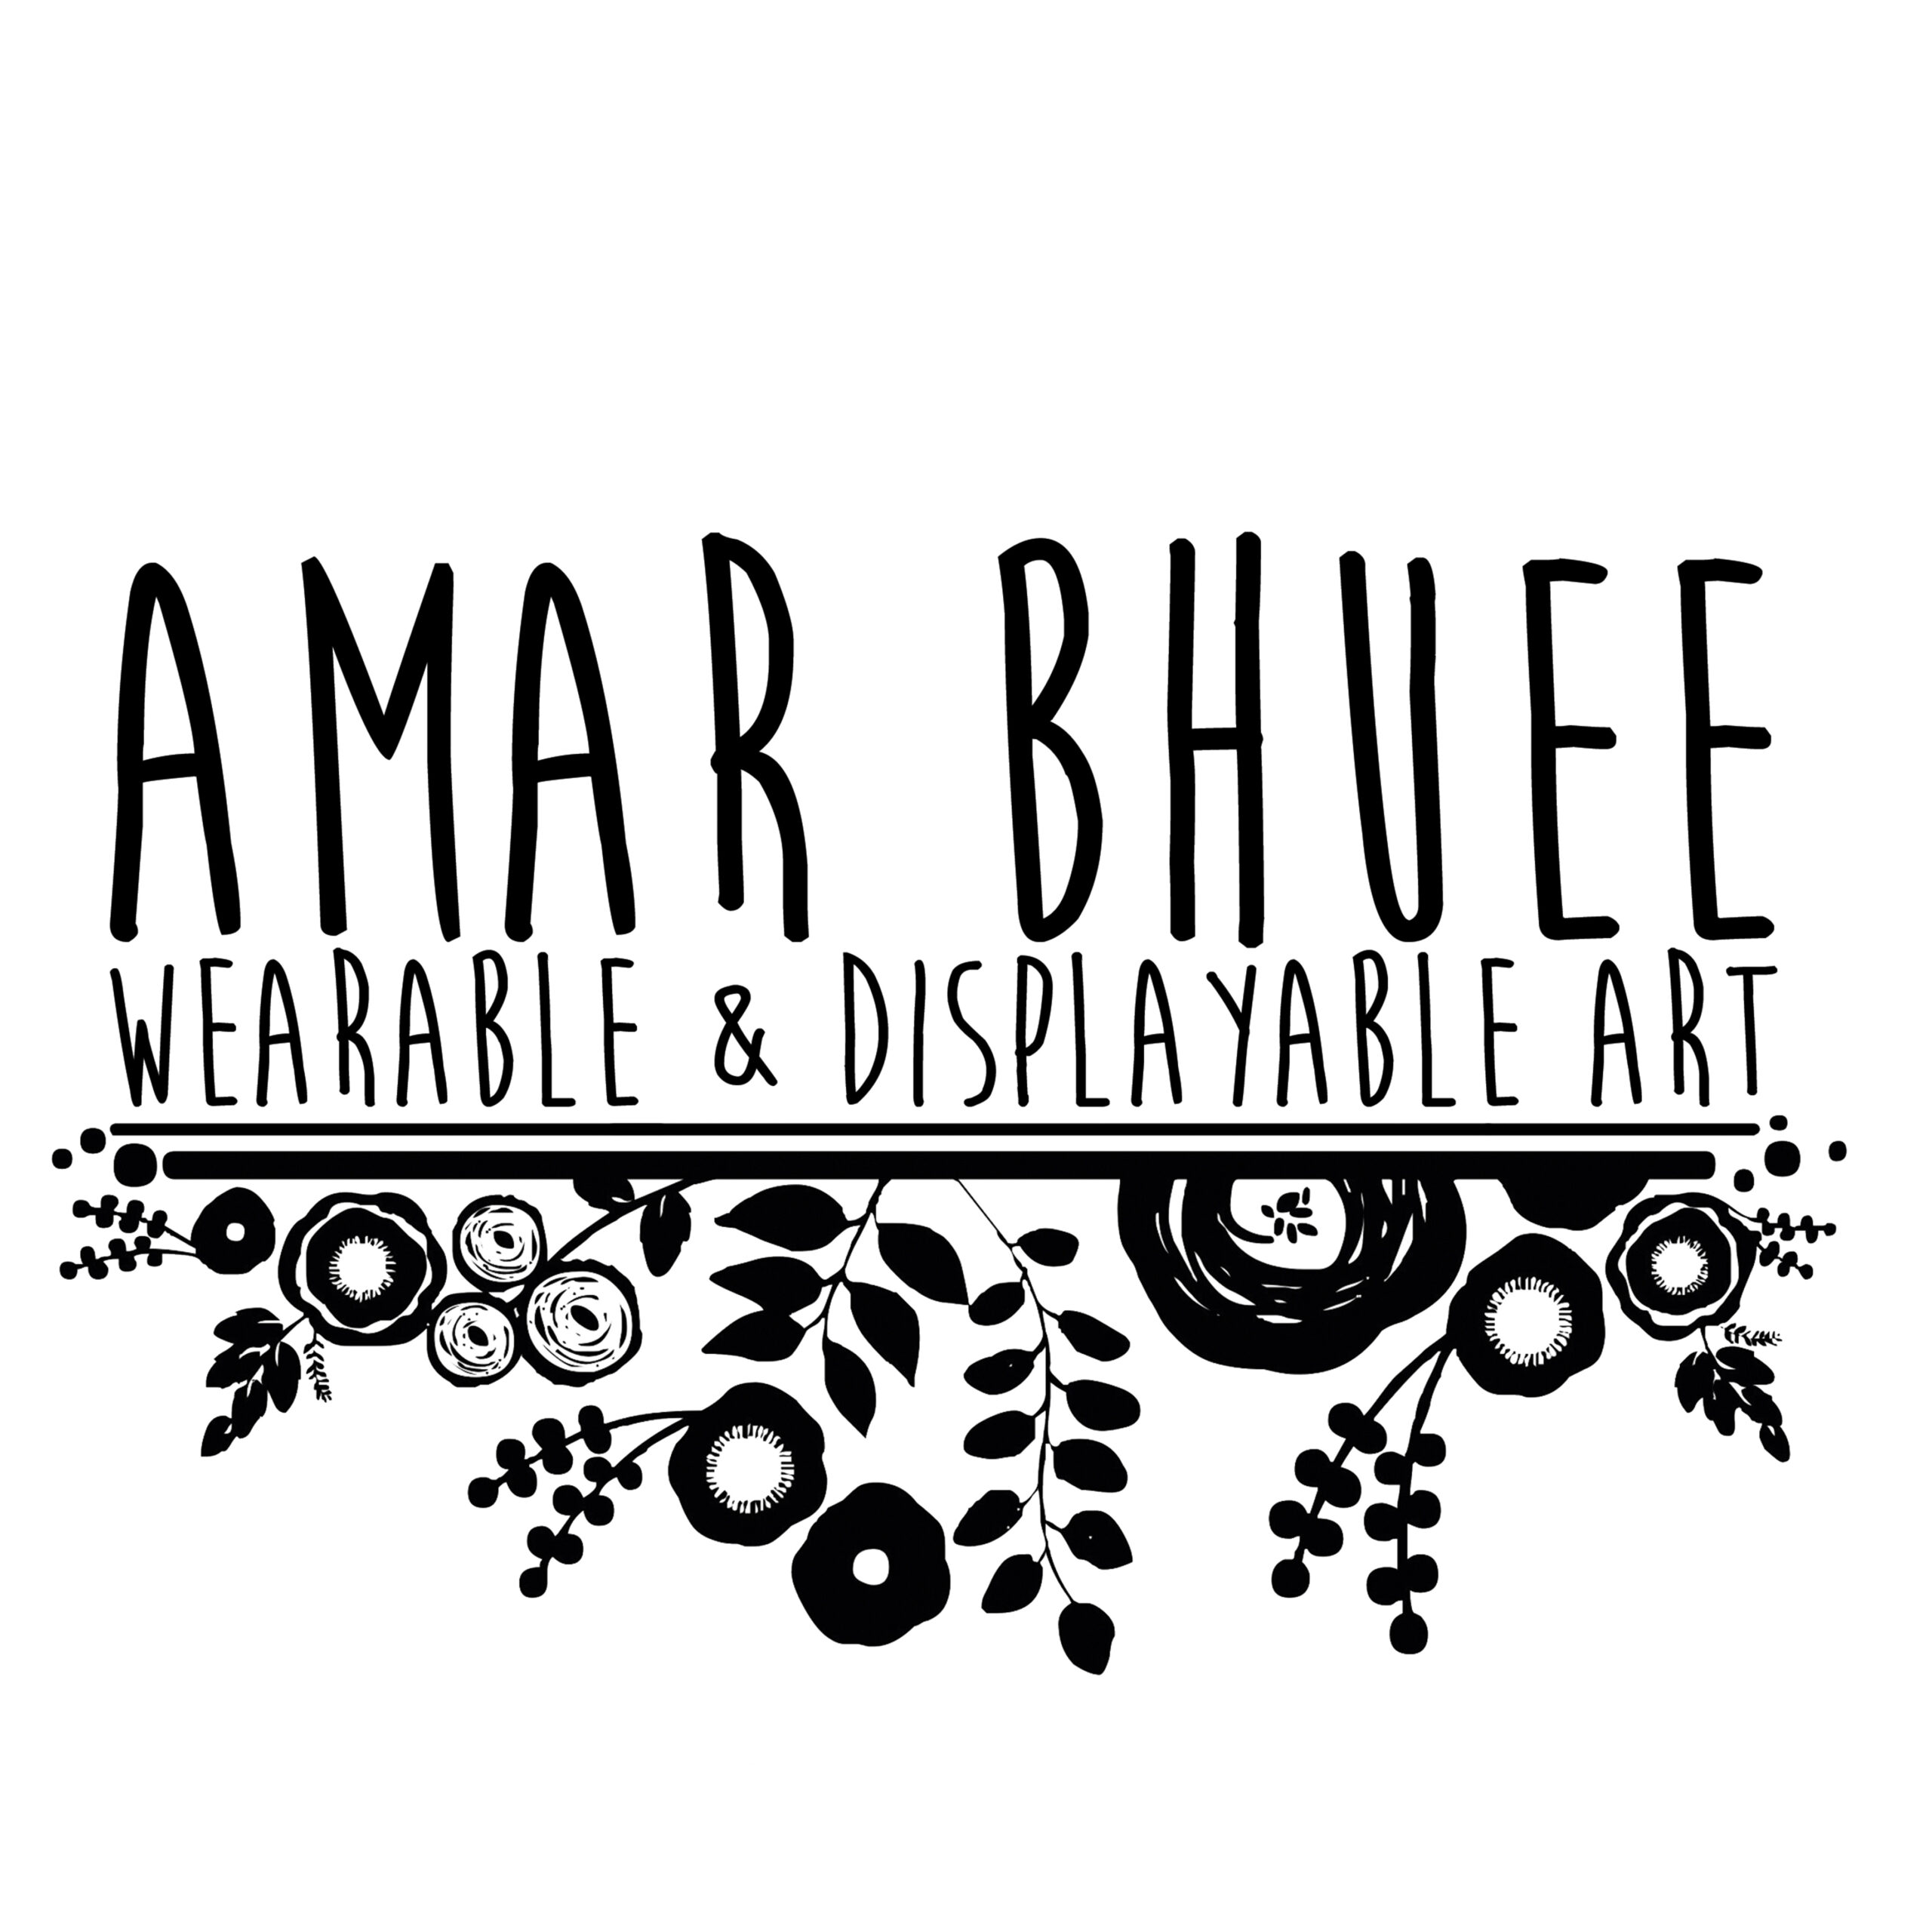 Amar Bhuee